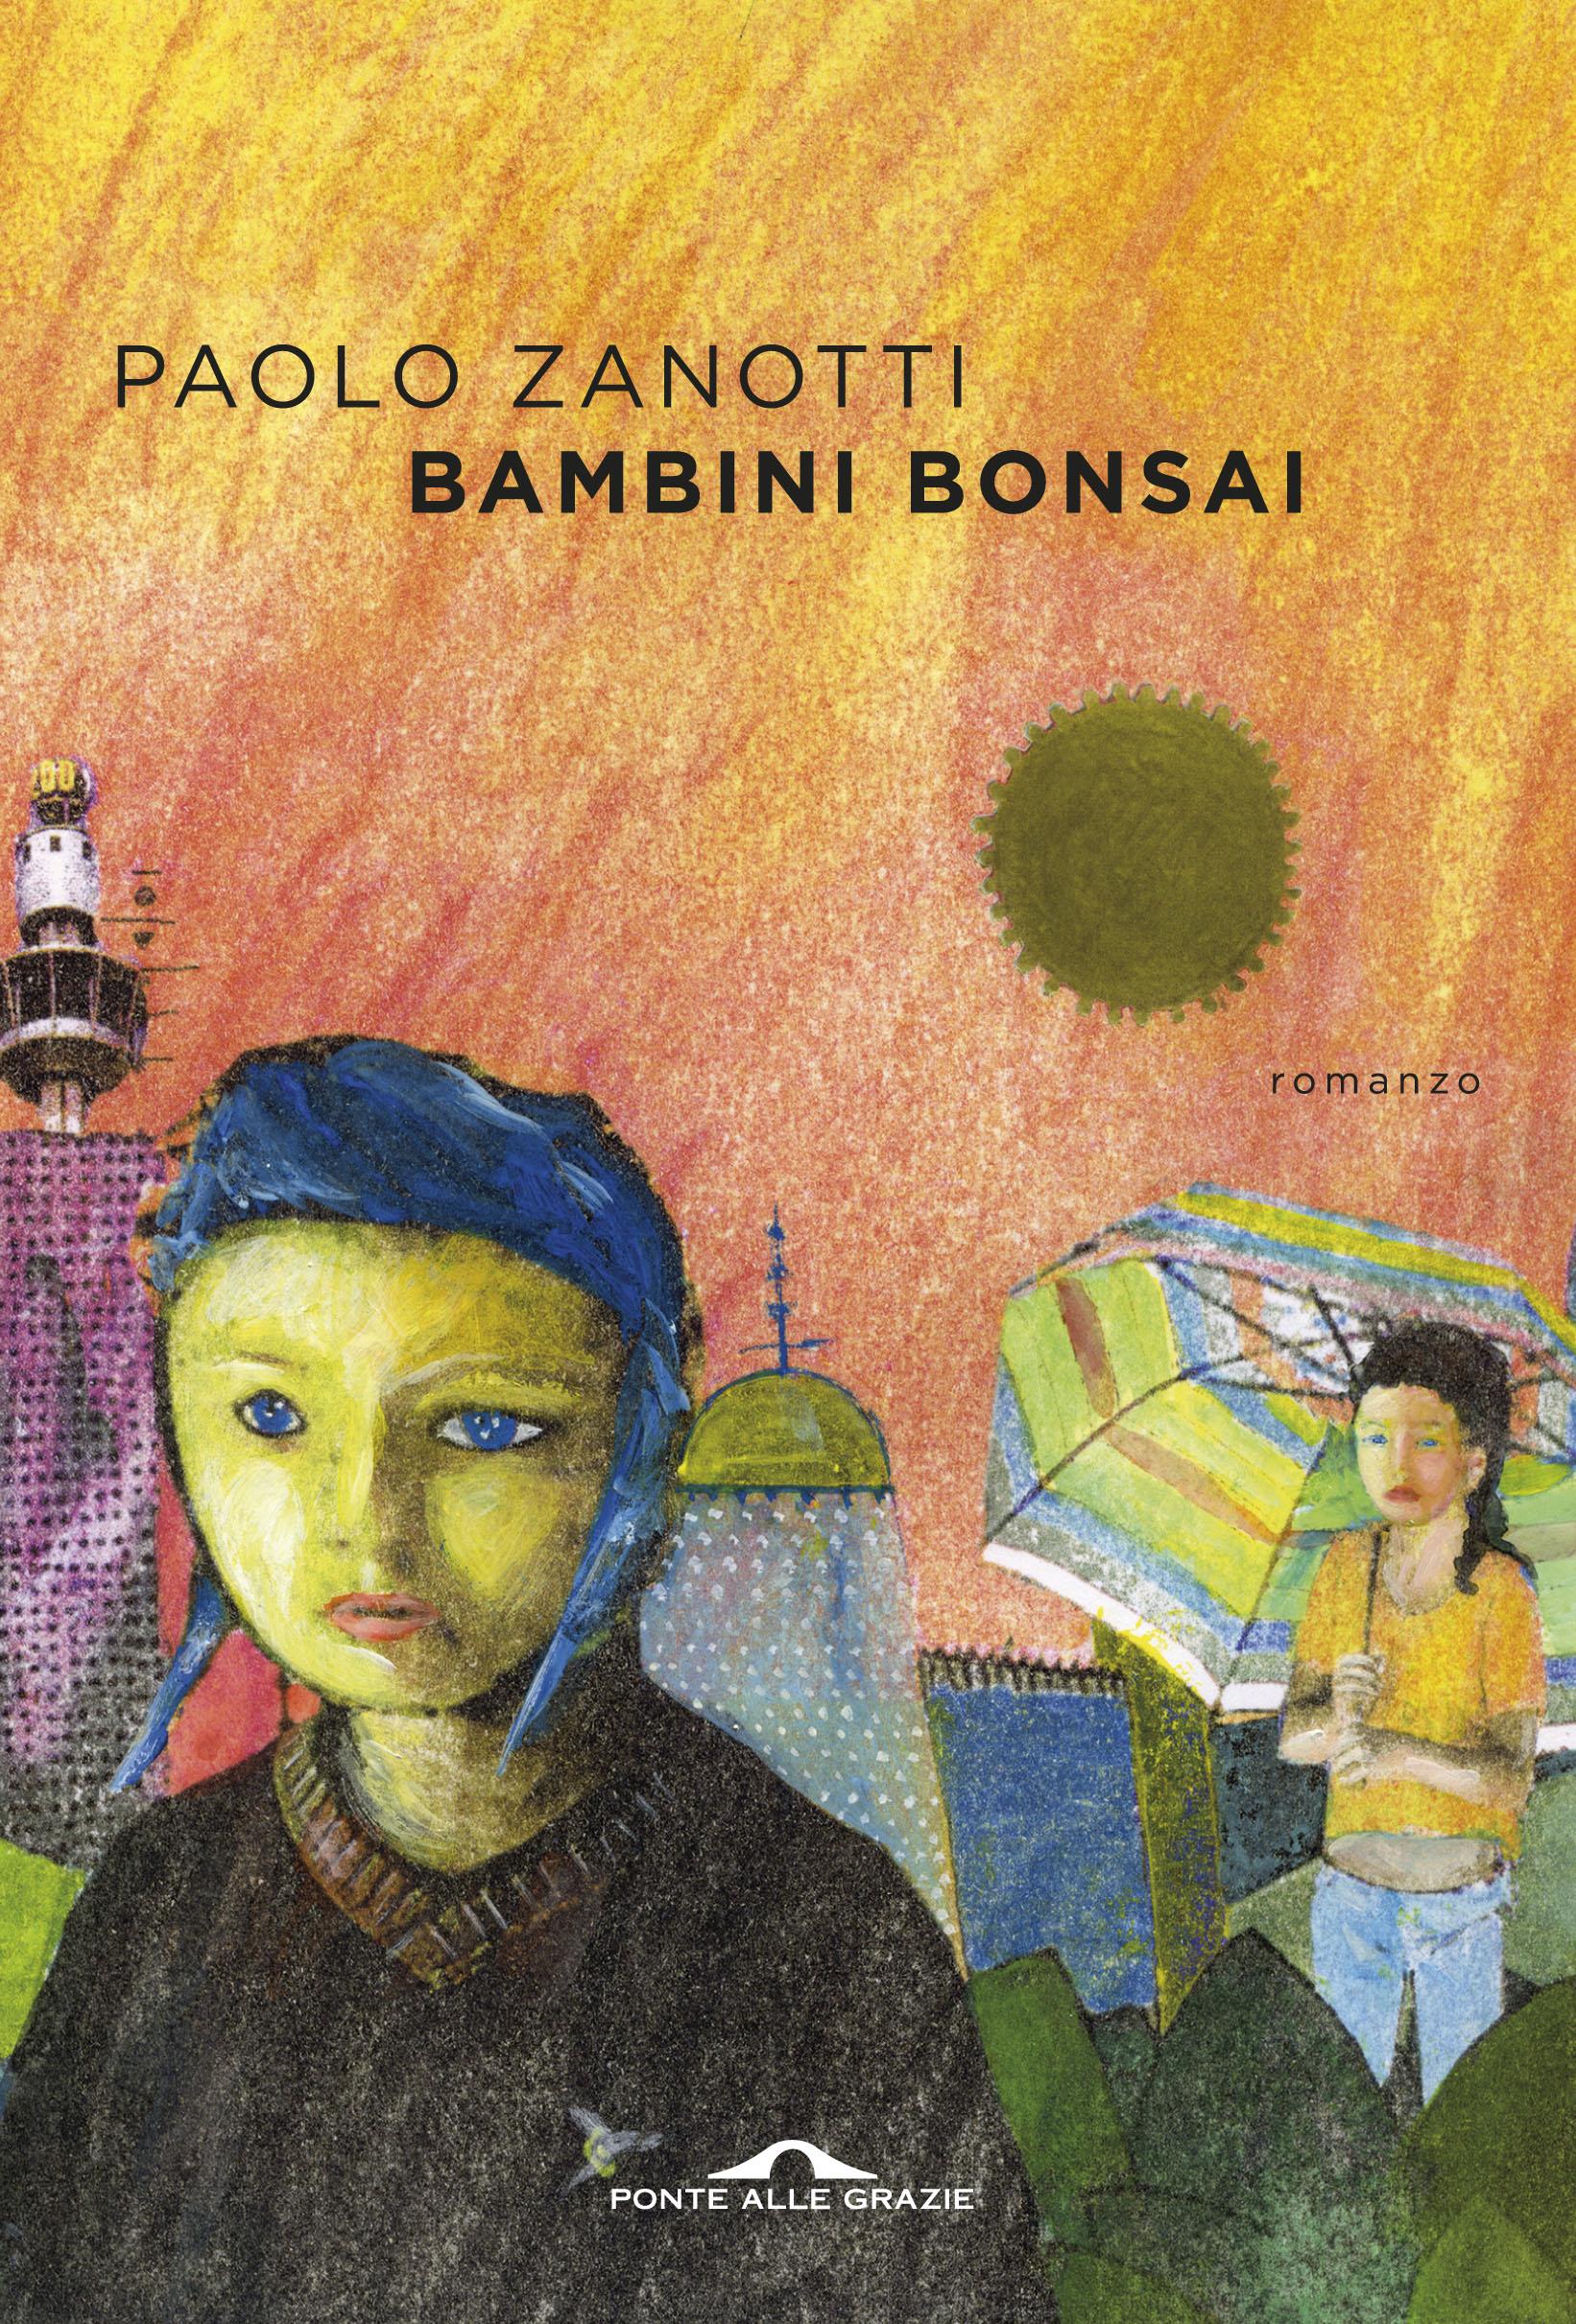 Bambini Bonsai: un libro per sentirsi all'altezza - Nanabianca Blog